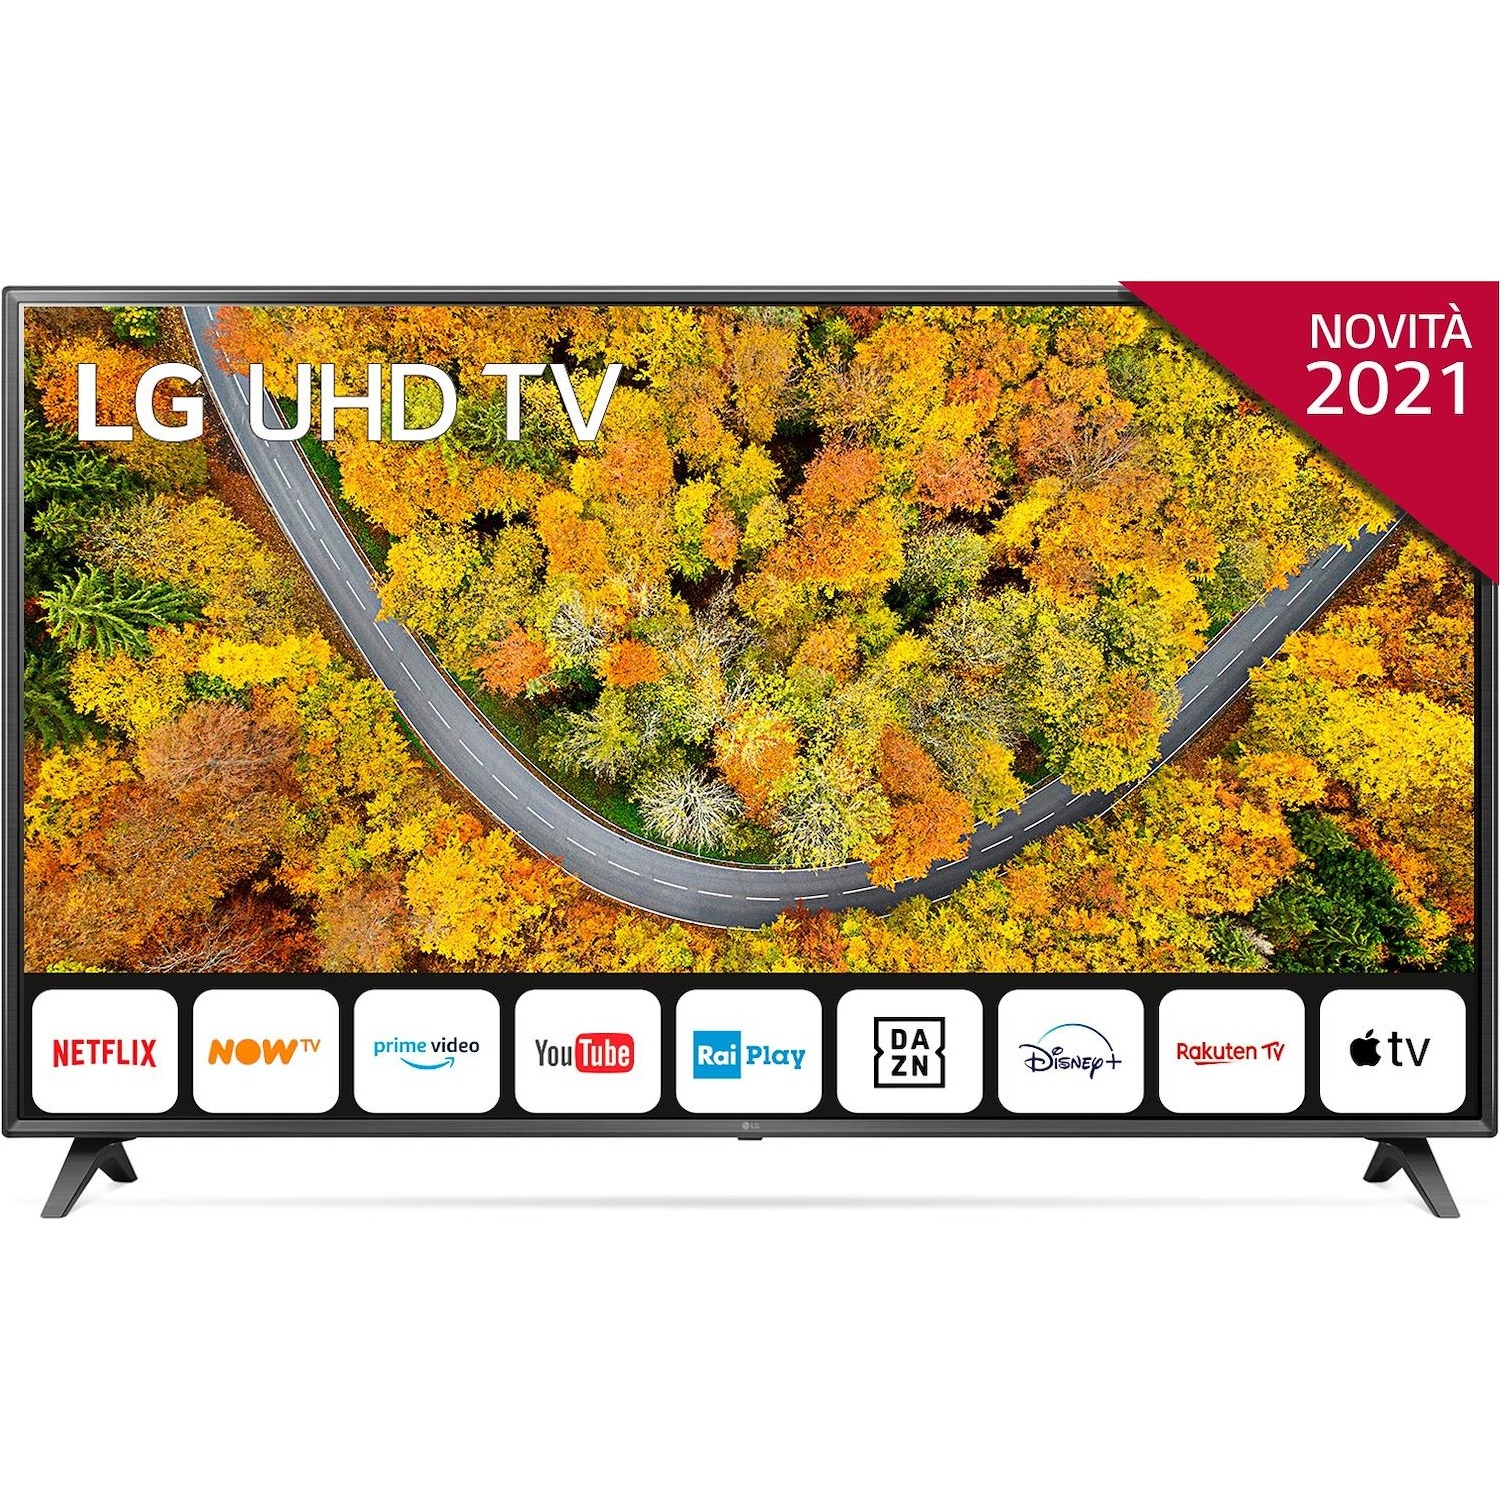 Immagine per TV LED LG 75UP75006 Calibrato 4K e FULL HD da DIMOStore